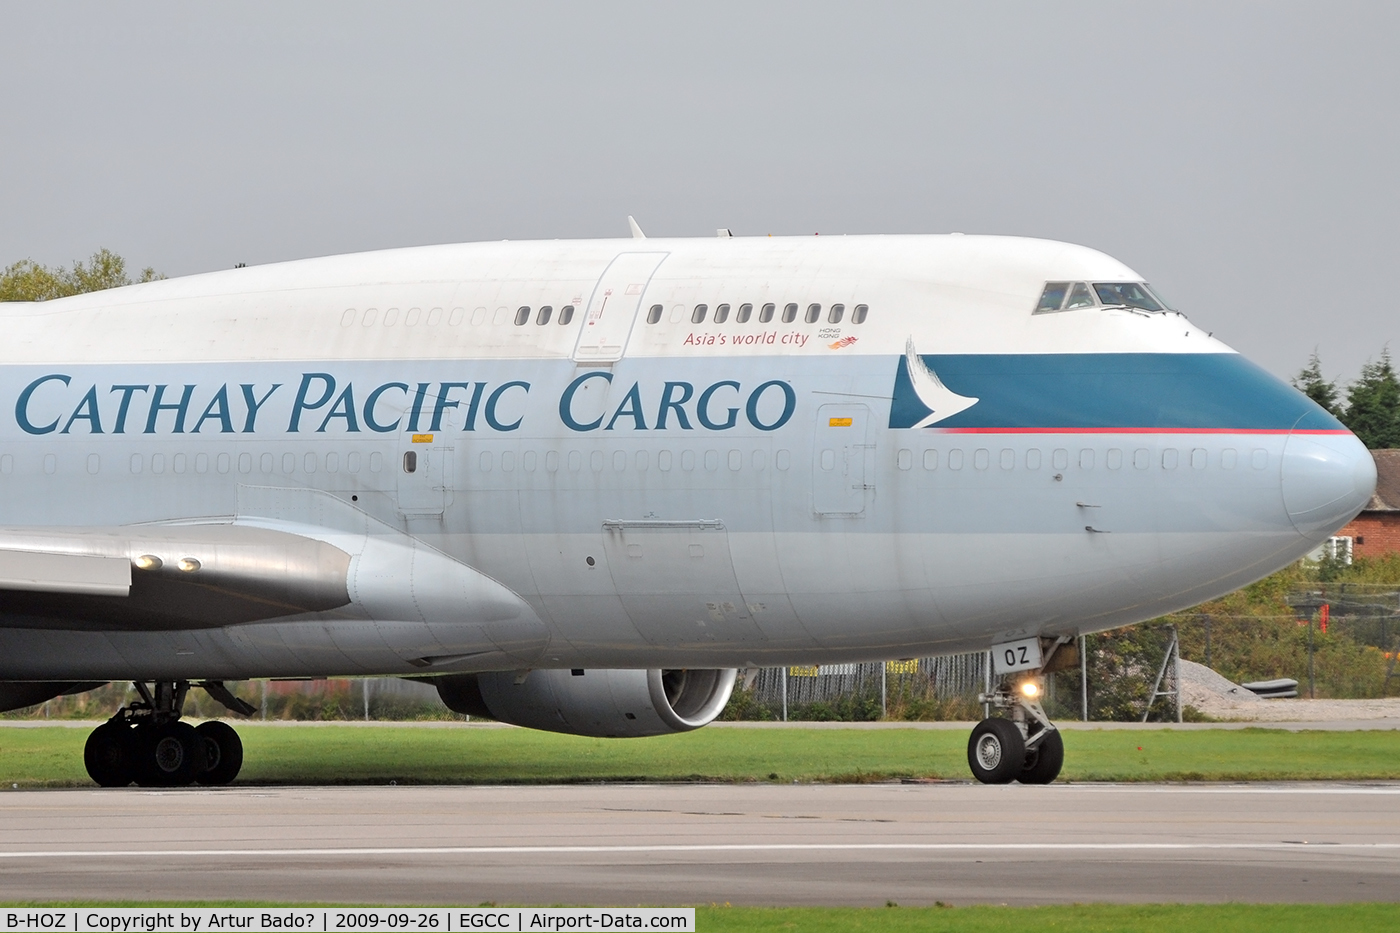 B-HOZ, 1992 Boeing 747-467/BCF C/N 25871, Cathay Pacific